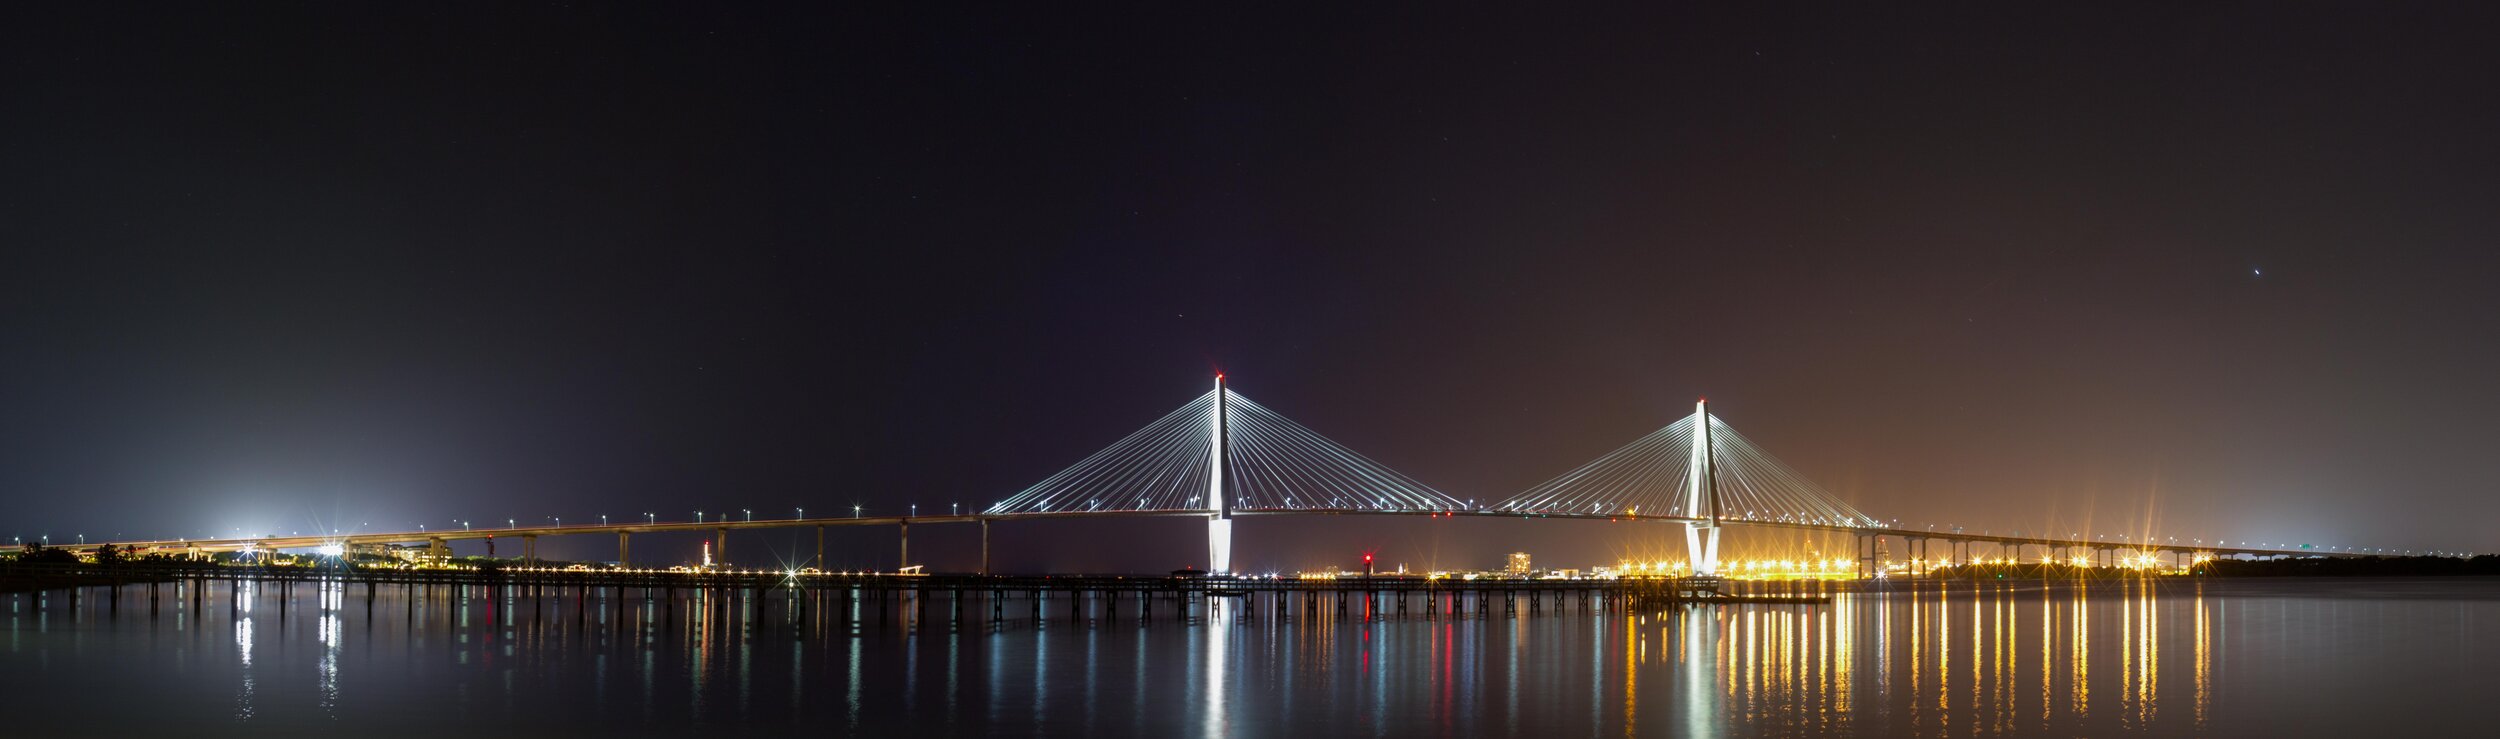 Bridge_Night.jpg